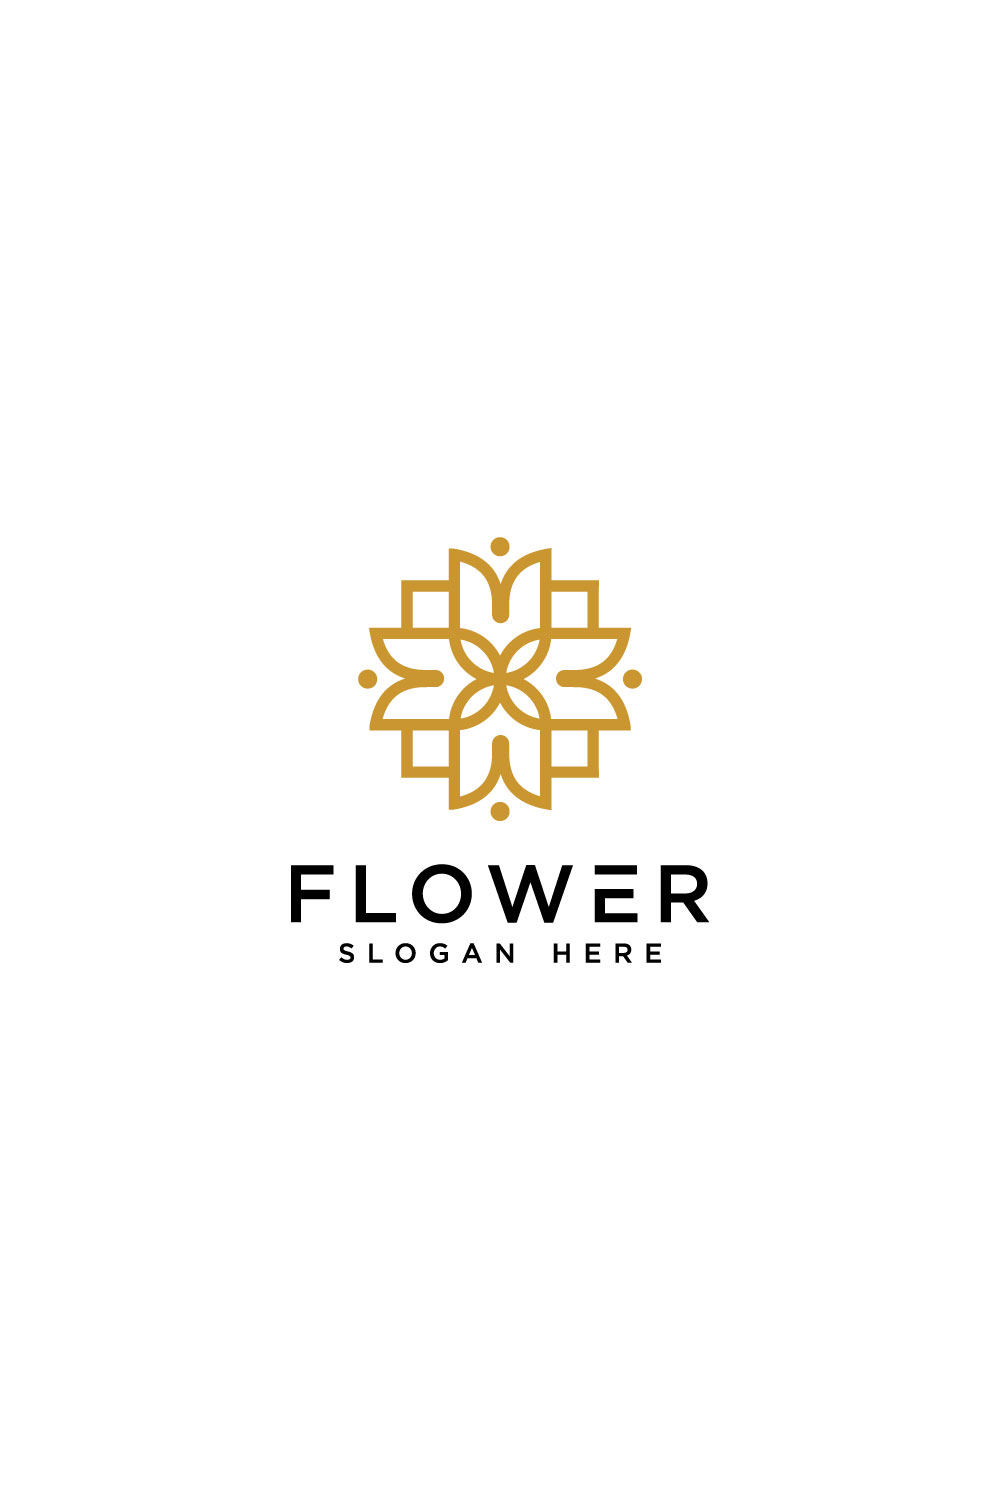 Flower Nature Logo Vector Design Pinterest.